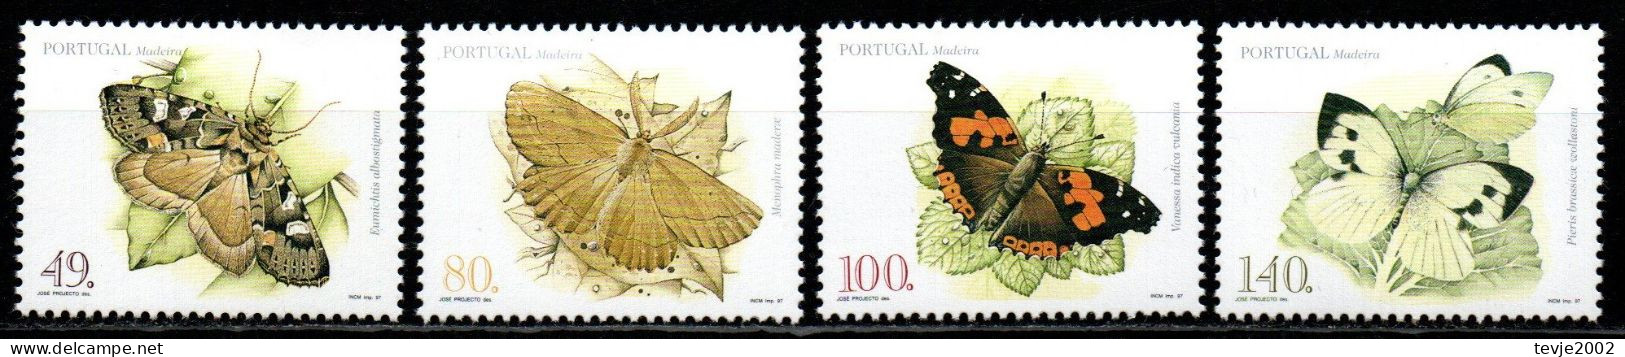 Portugal Madeira 1997 - Mi.Nr. 187 - 190 A - Postfrisch MNH - Tiere Animals Schmetterlinge Butterflies - Schmetterlinge